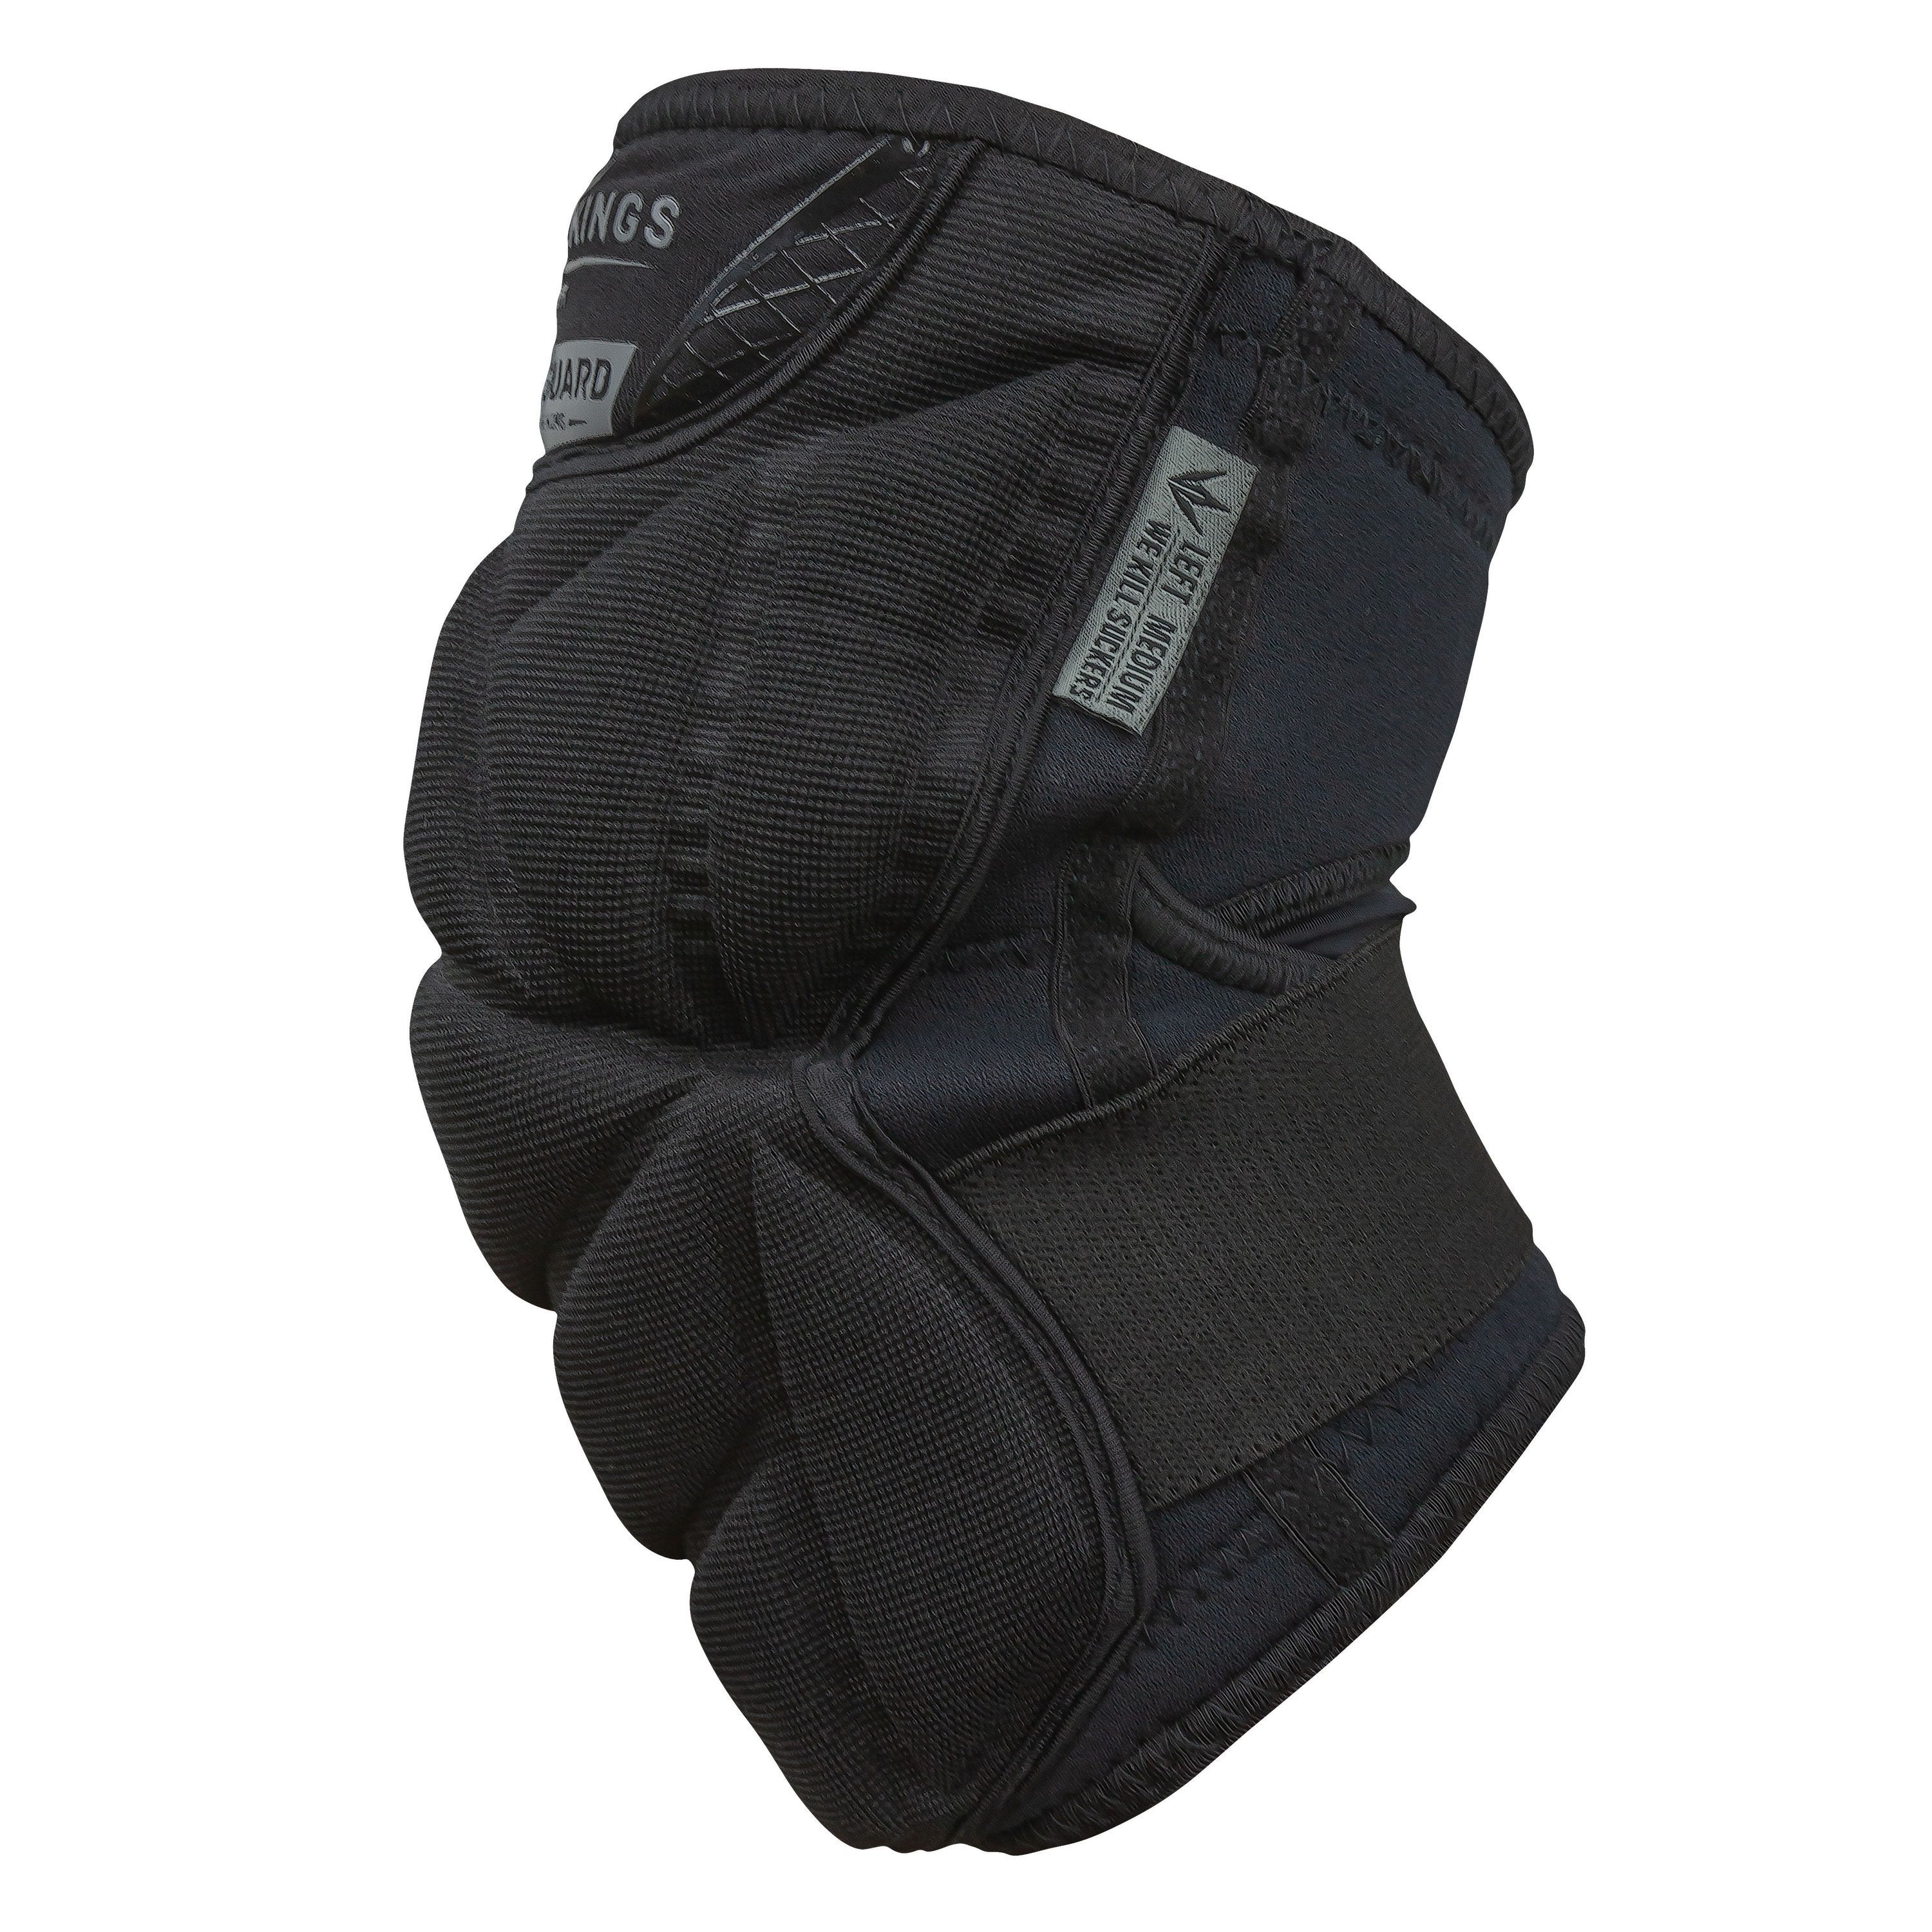 Supreme Paintball Gloves, Black Bunkerkings Padded Gear –